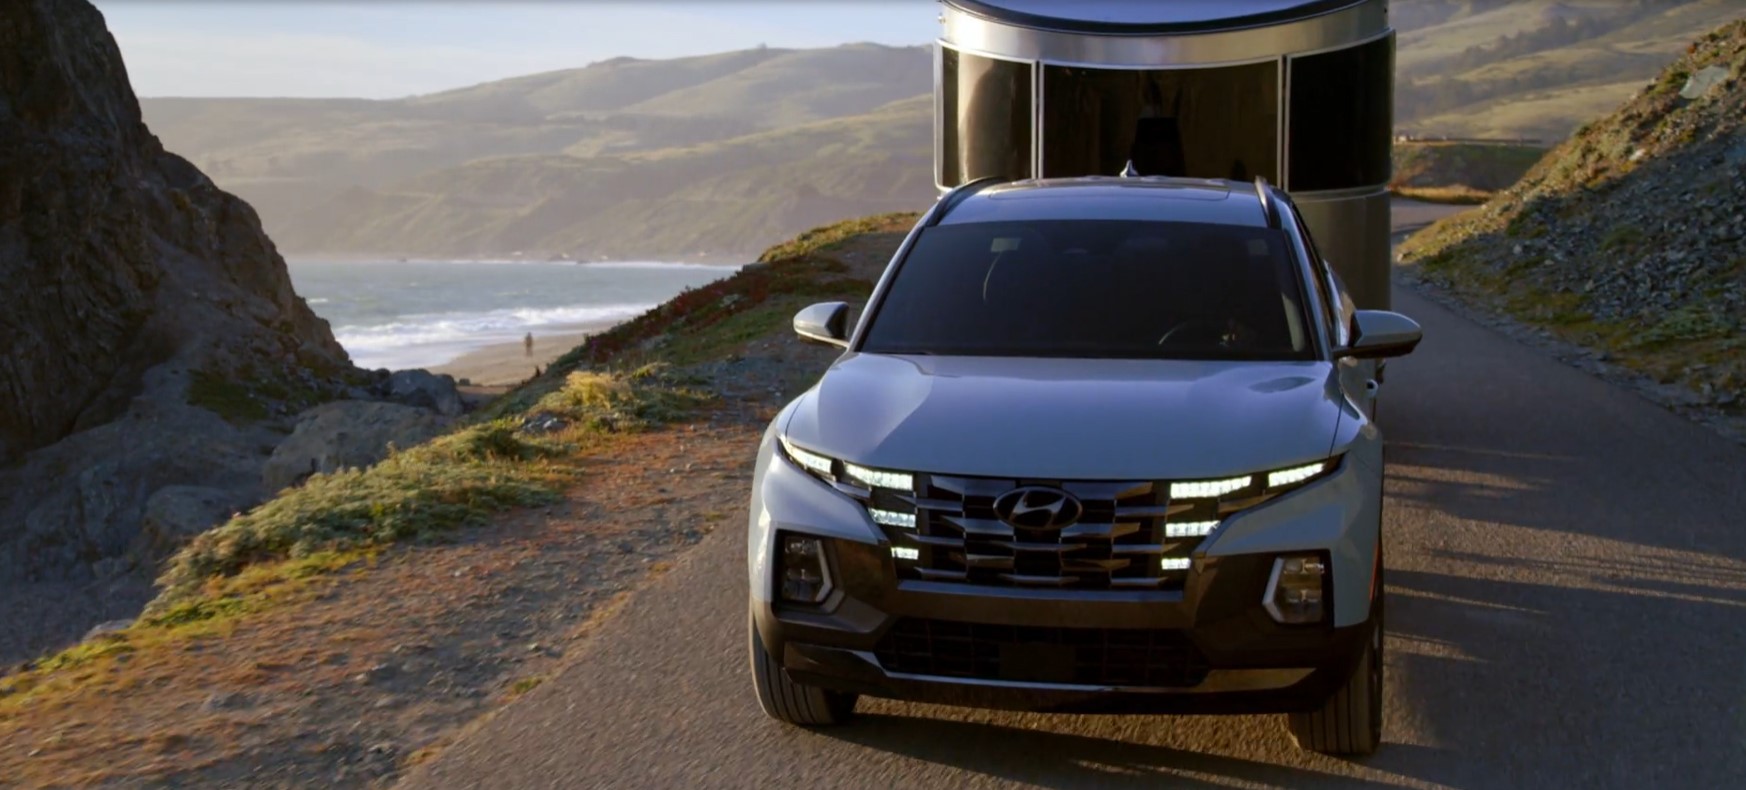 Hyundai Santa Cruz стал самым быстро продаваемым автомобилем в августе 2021 года в США